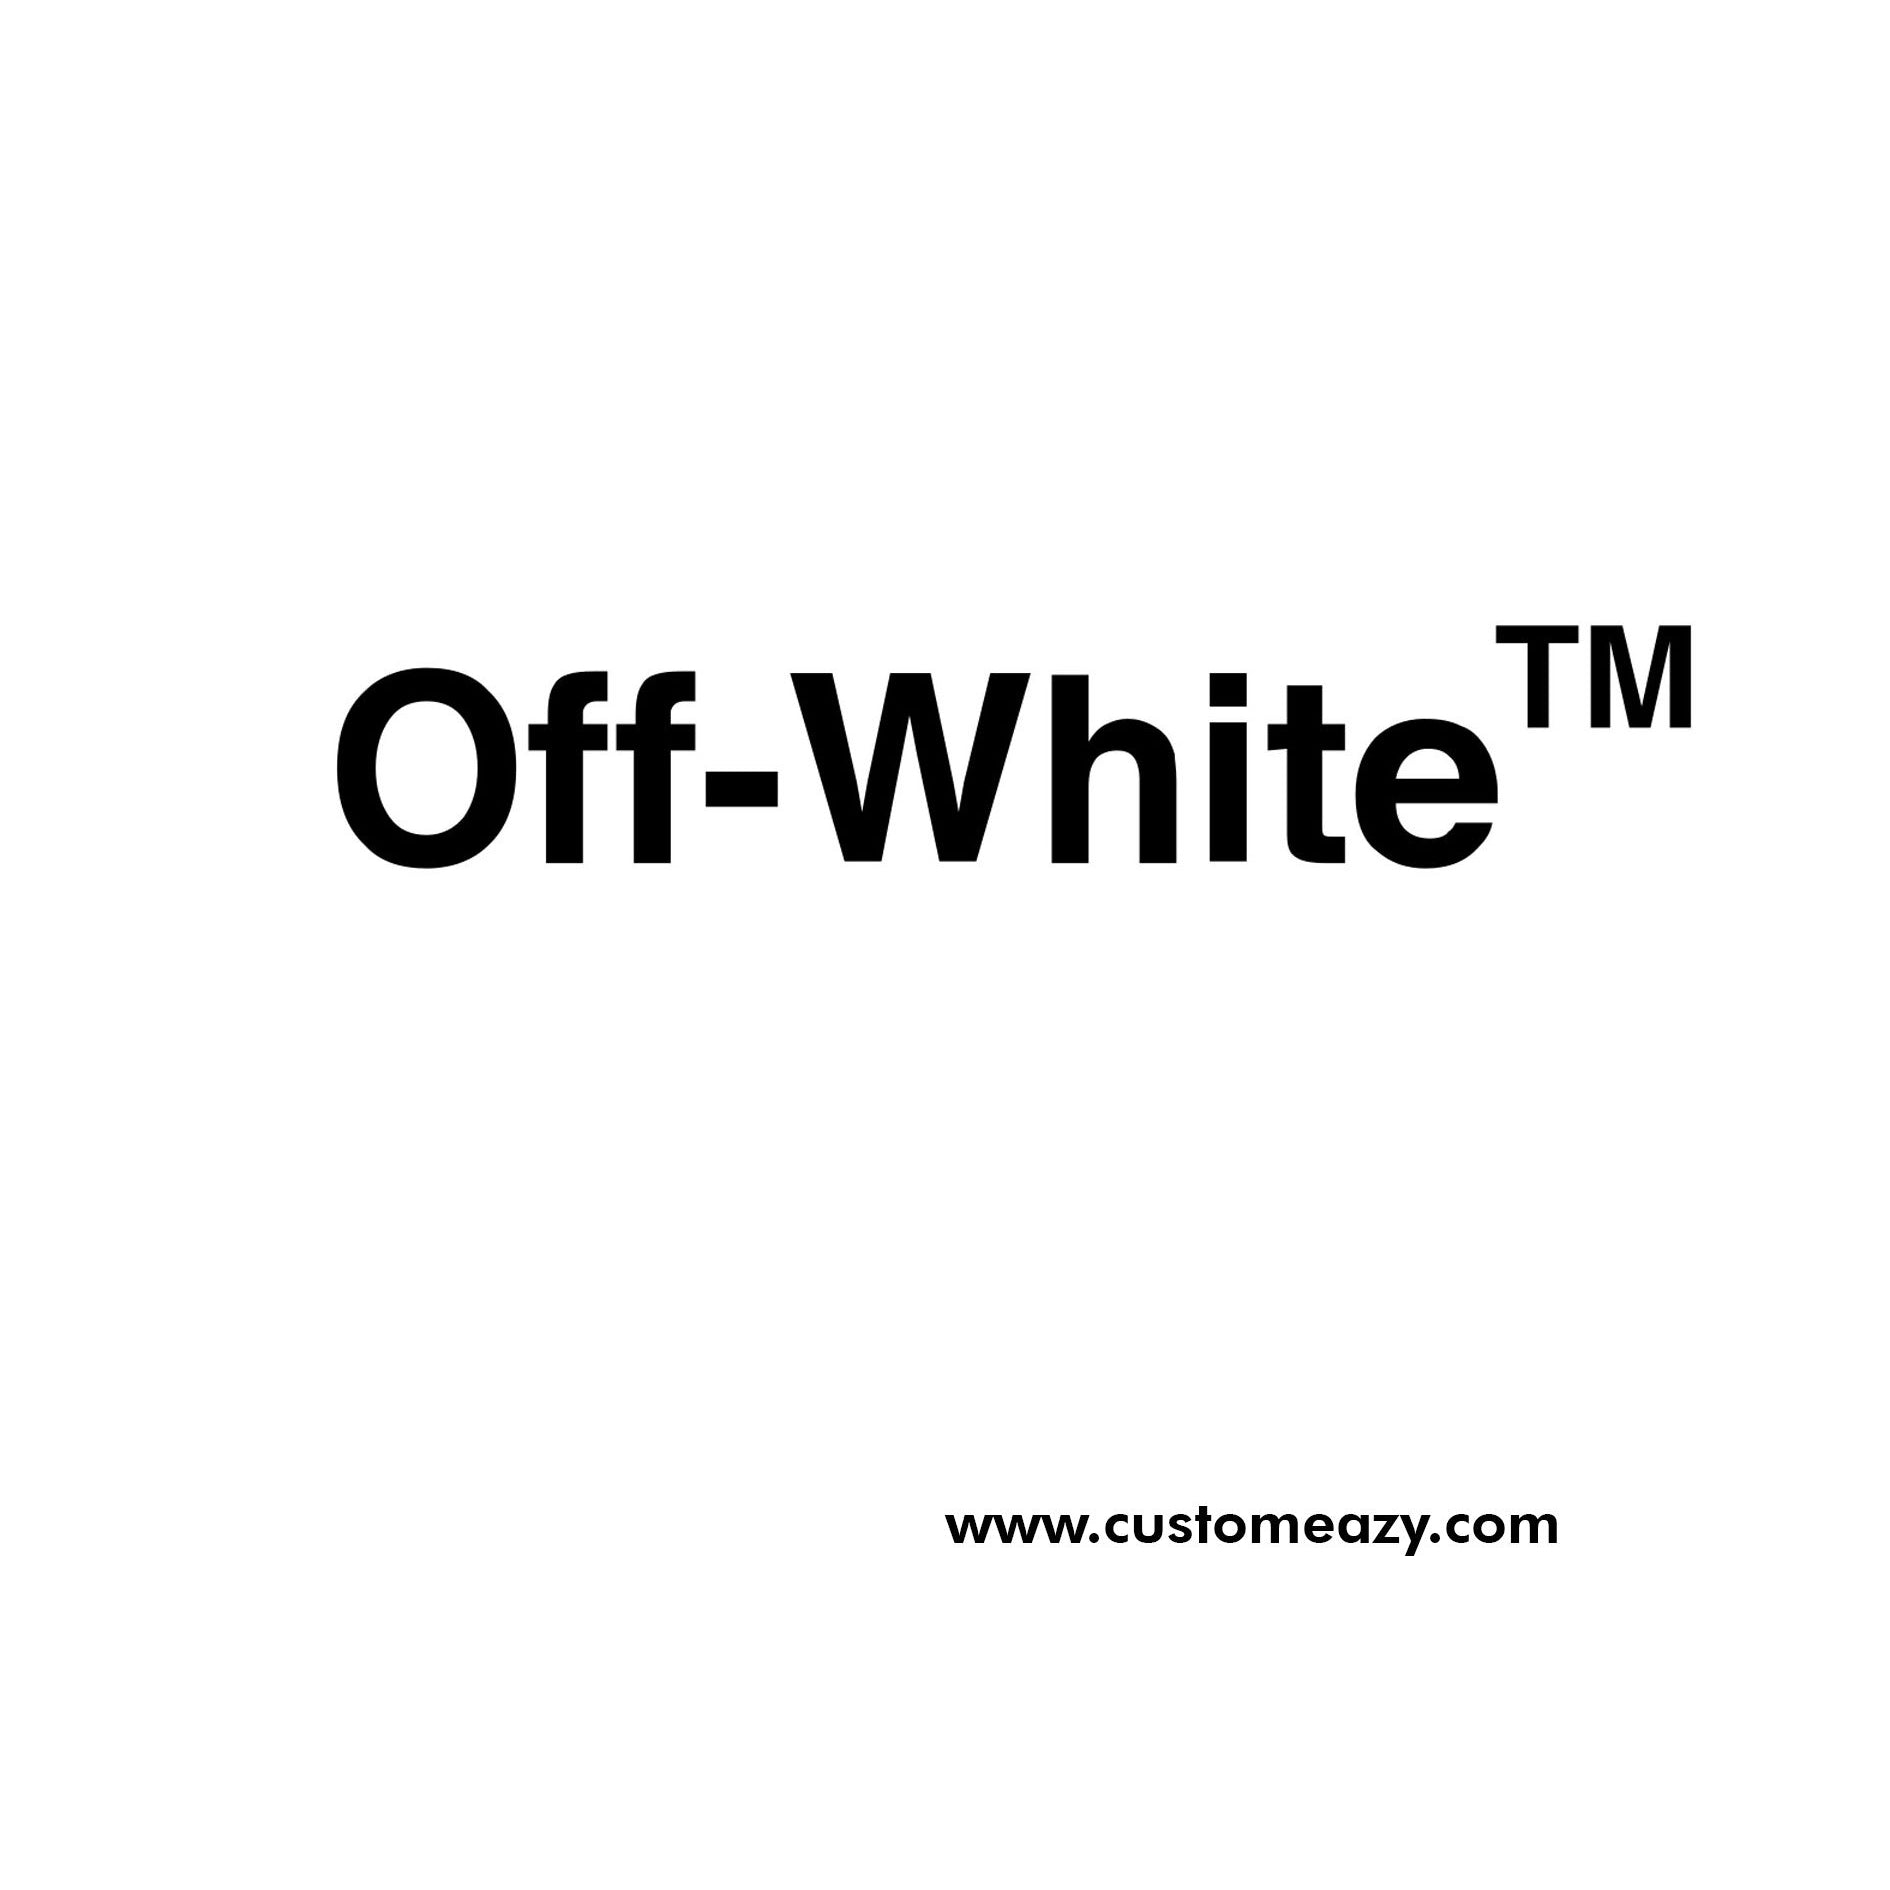 Off-White Logo  Off-white logo, ? logo, Off white